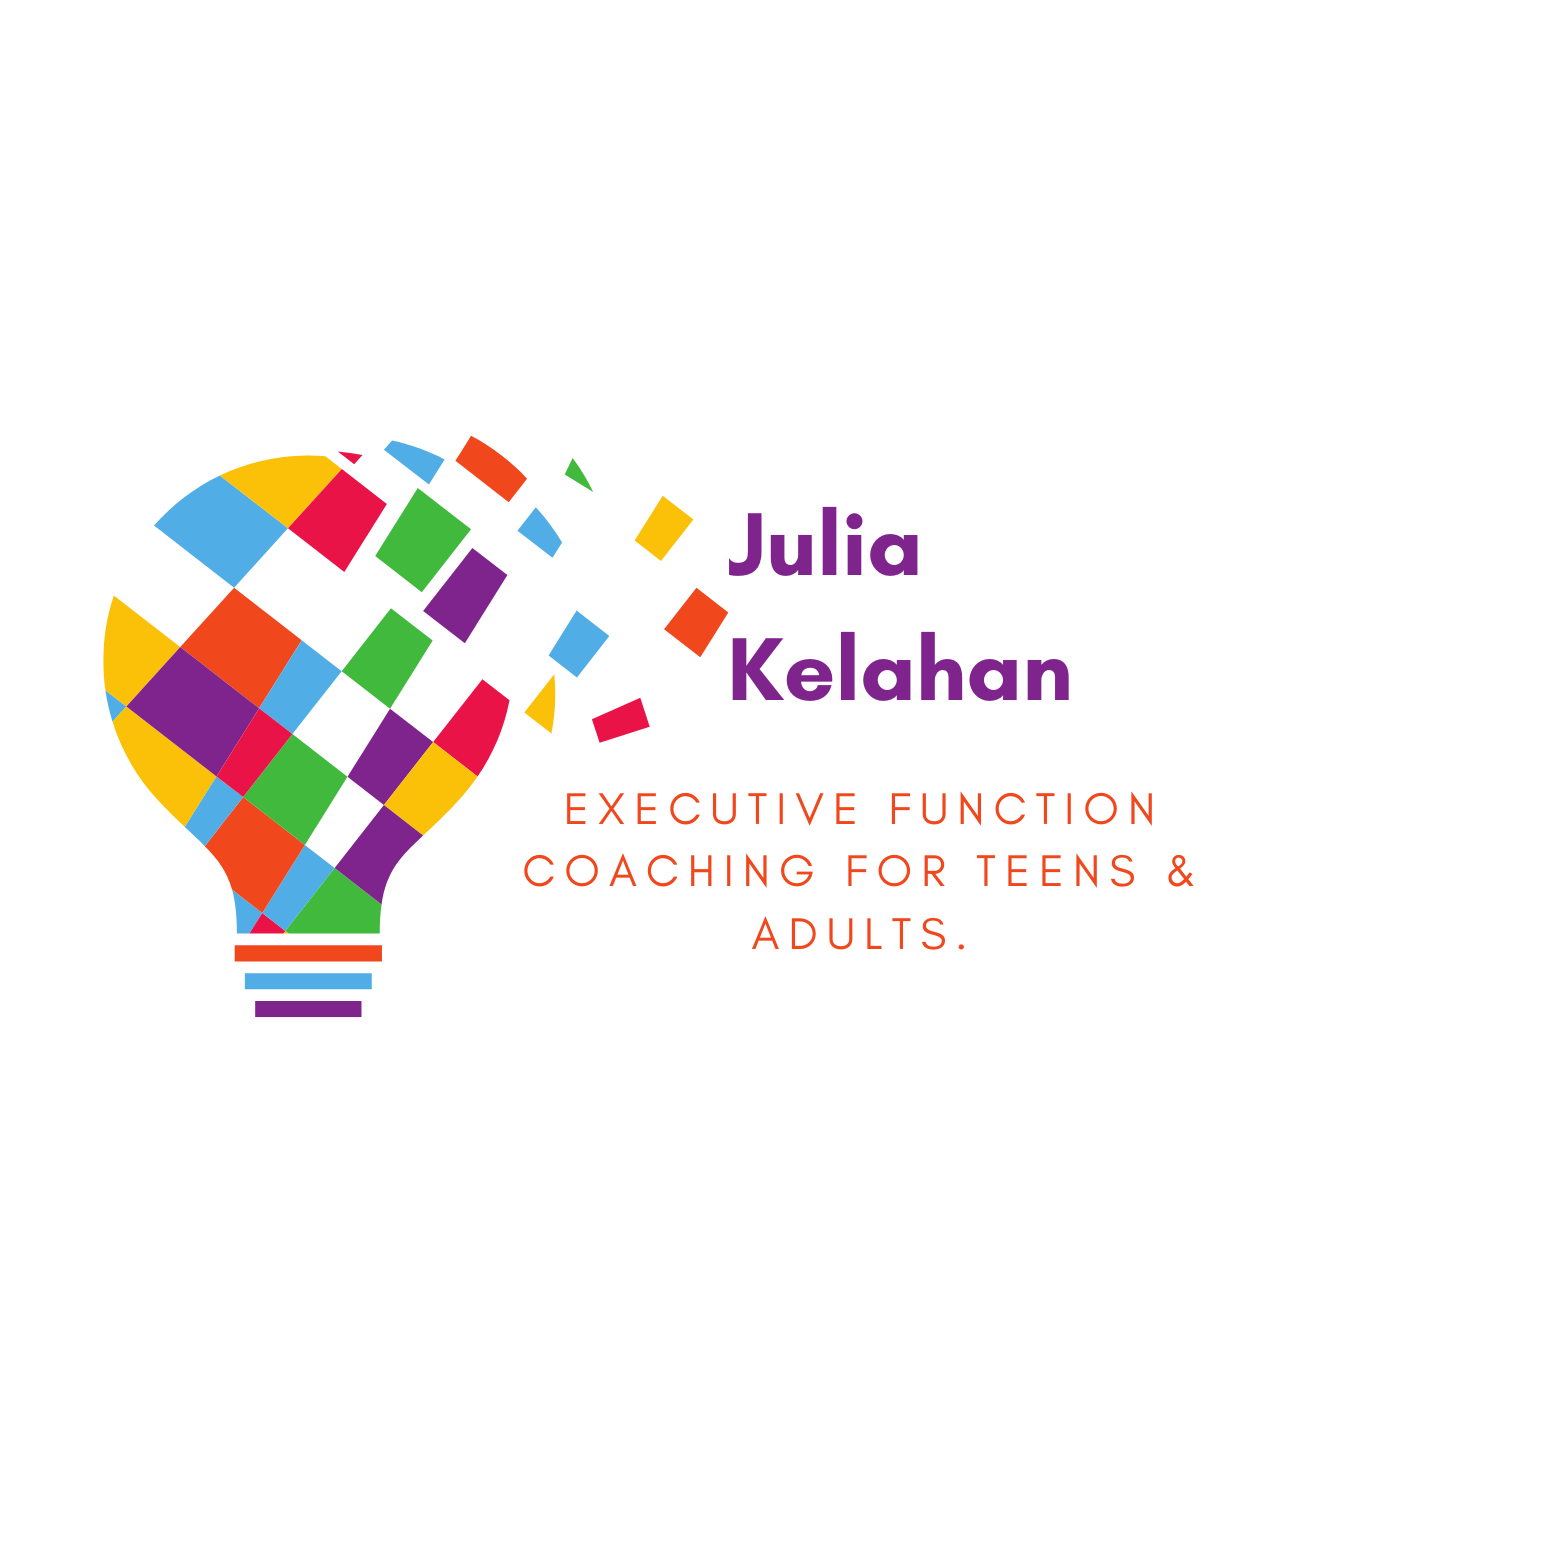 Julia kelahan executive function coaching logo